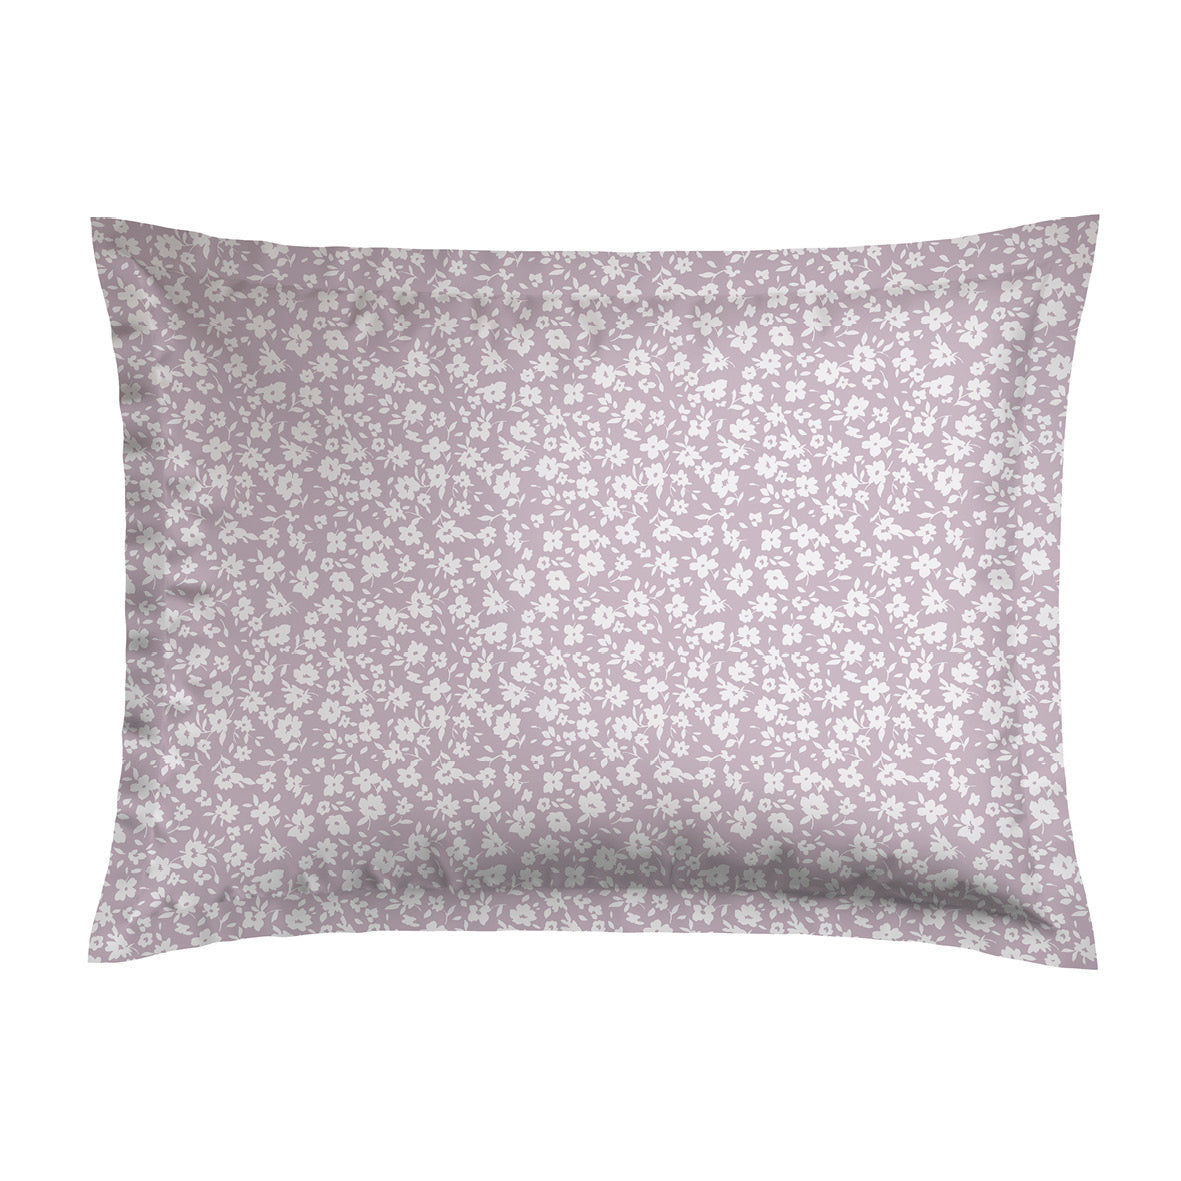 Pillowcase(s) cotton satin - Les Yeux de Suzanne Lavender